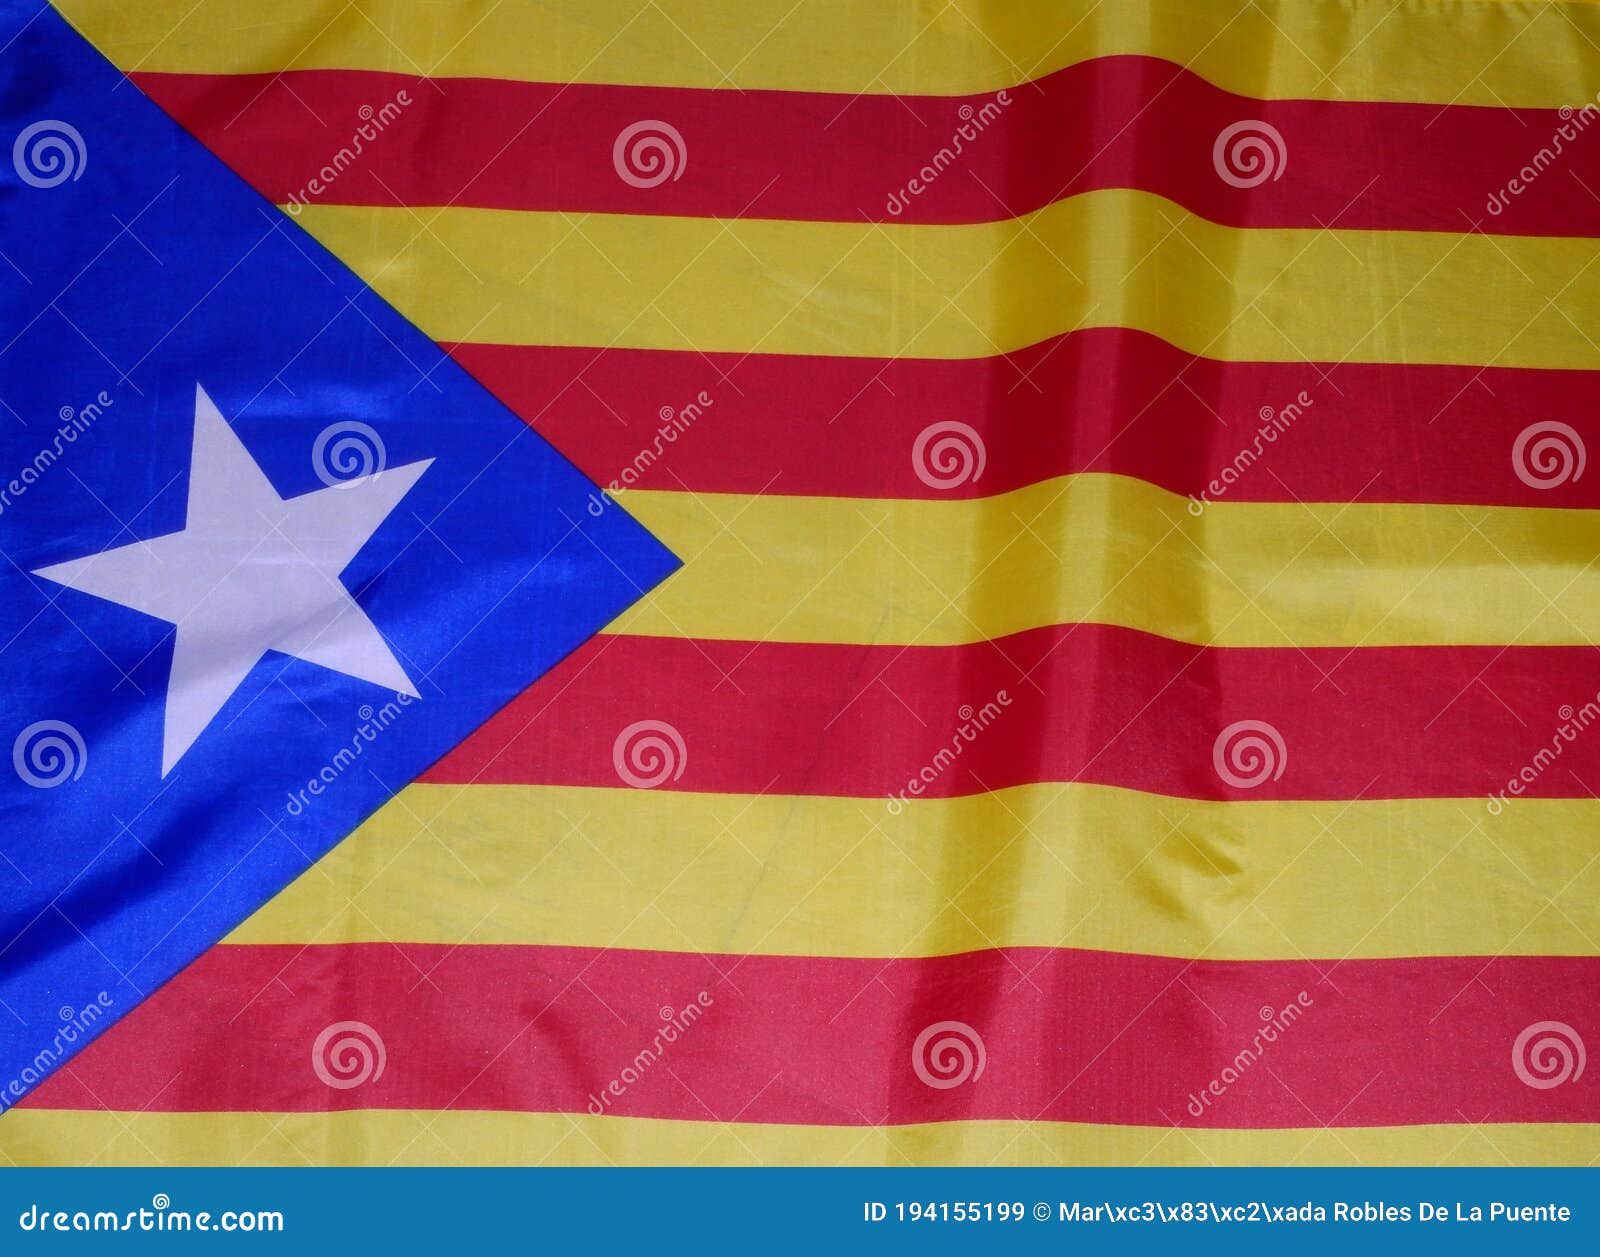 bandera estelada catalsna